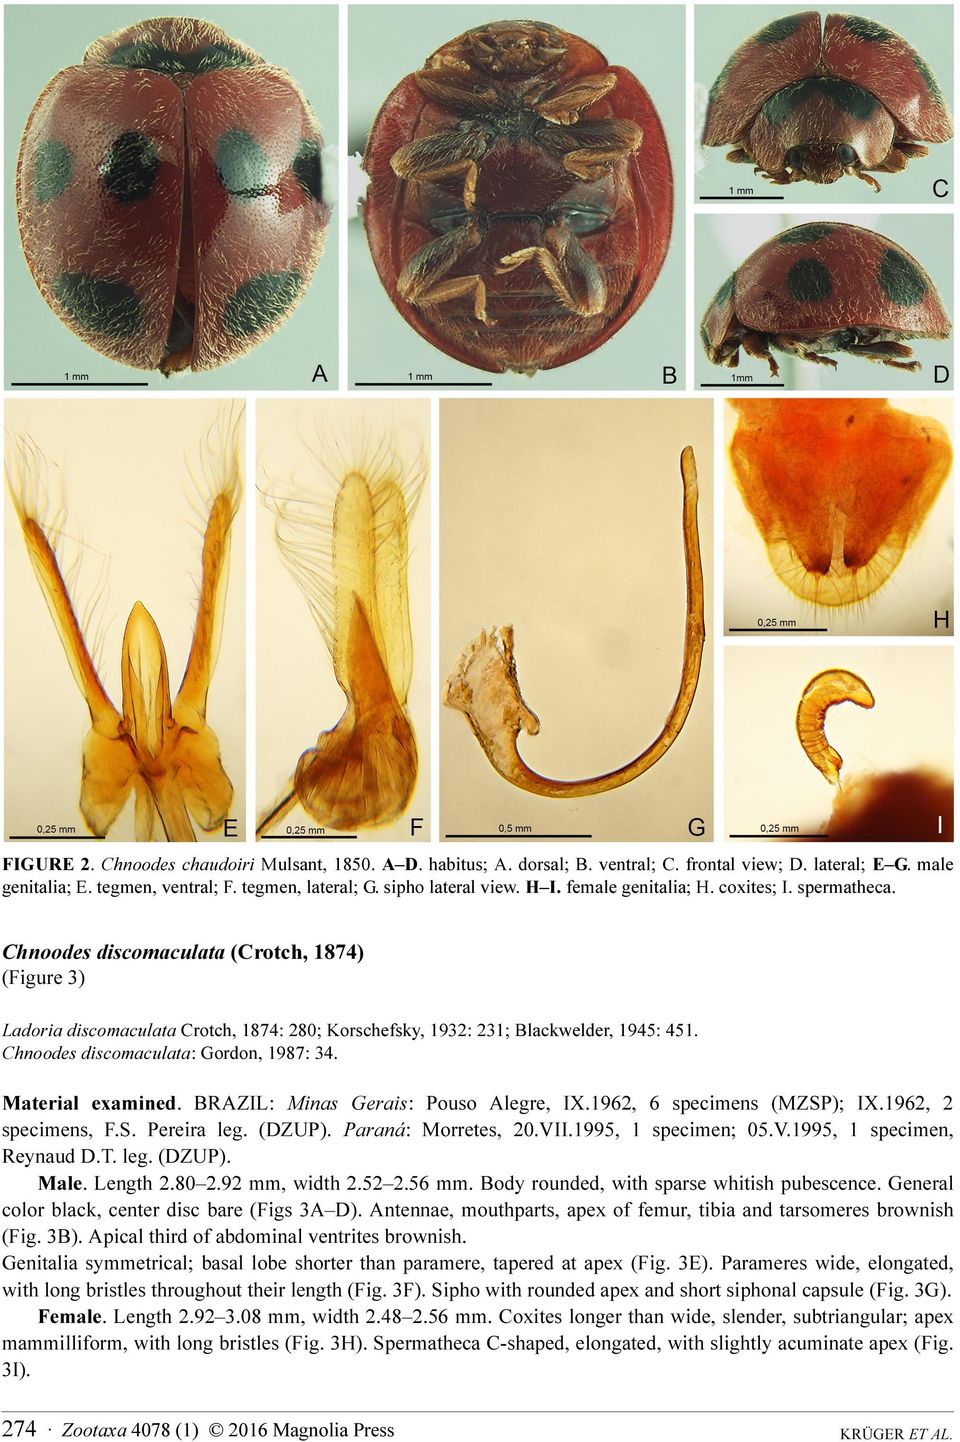 Chnoodes discomaculata: Gordon, 1987: 34. Material examined. BRAZIL: Minas Gerais: Pouso Alegre, IX.1962, 6 specimens (MZSP); IX.1962, 2 specimens, F.S. Pereira leg. (DZUP). Paraná: Morretes, 20.VII.